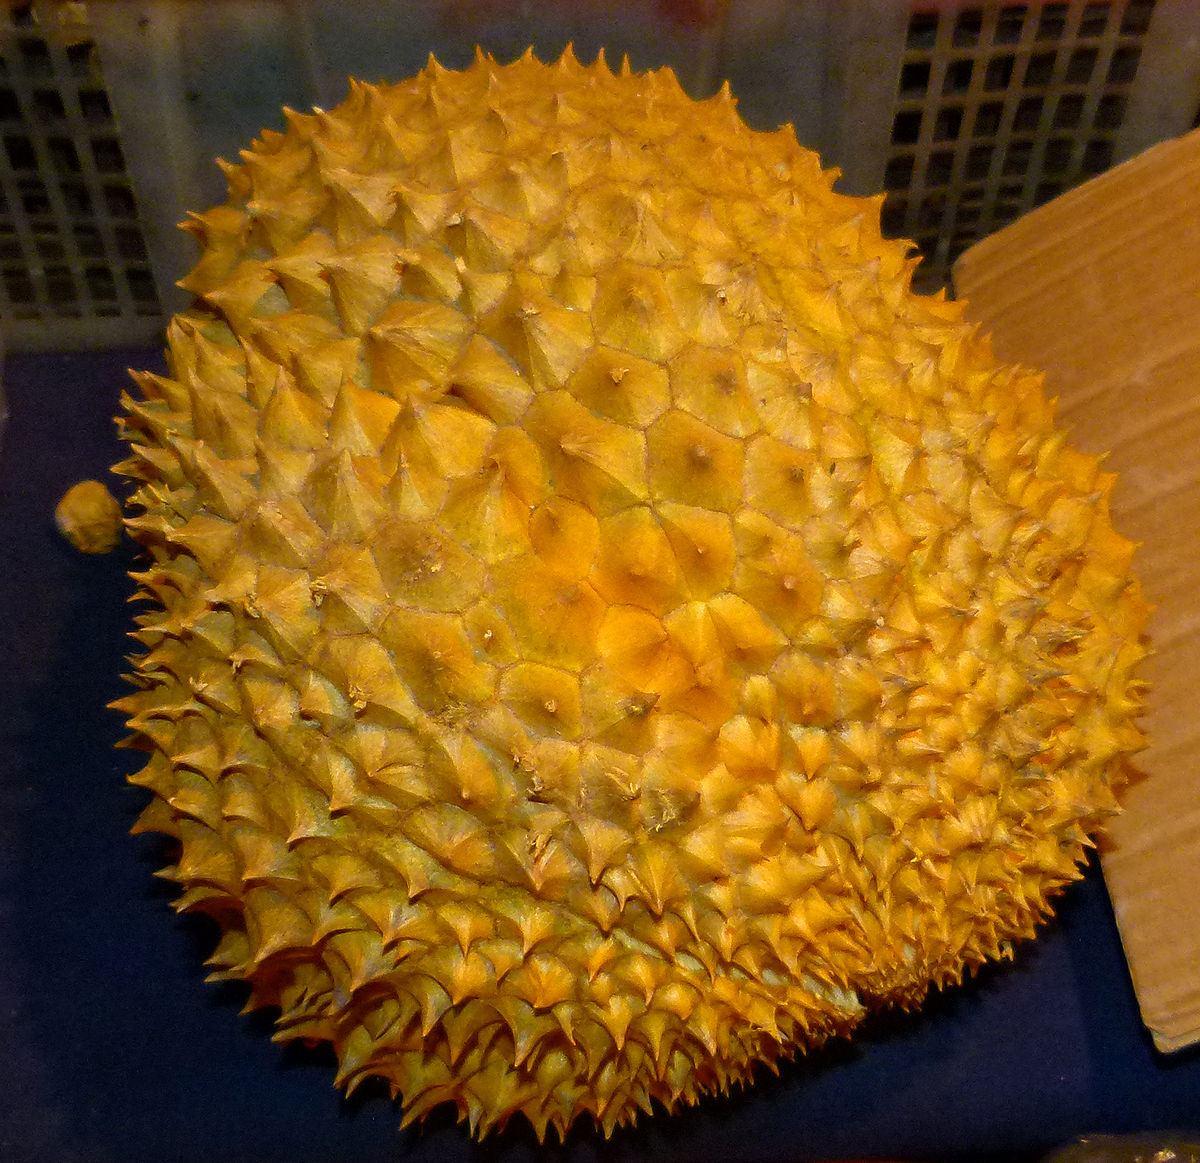 Durianfrucht